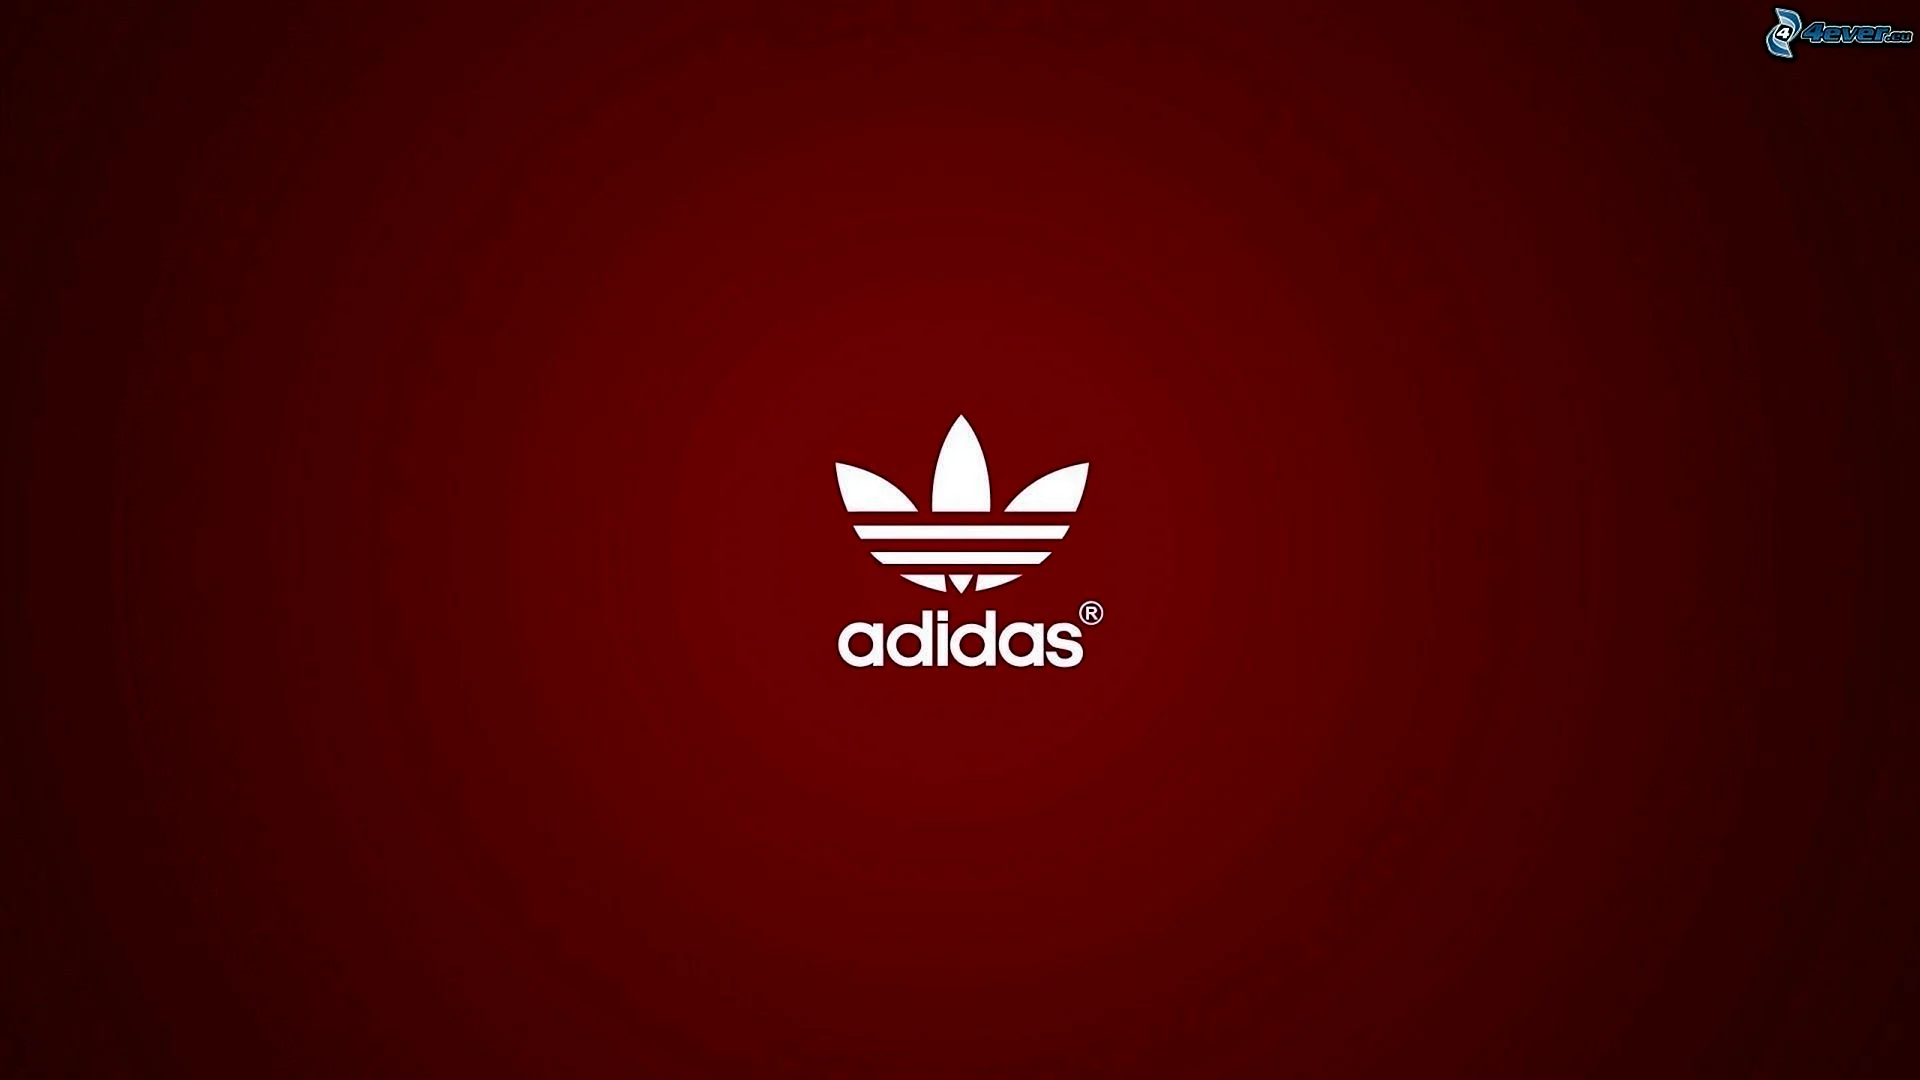 Adidas logo 2021